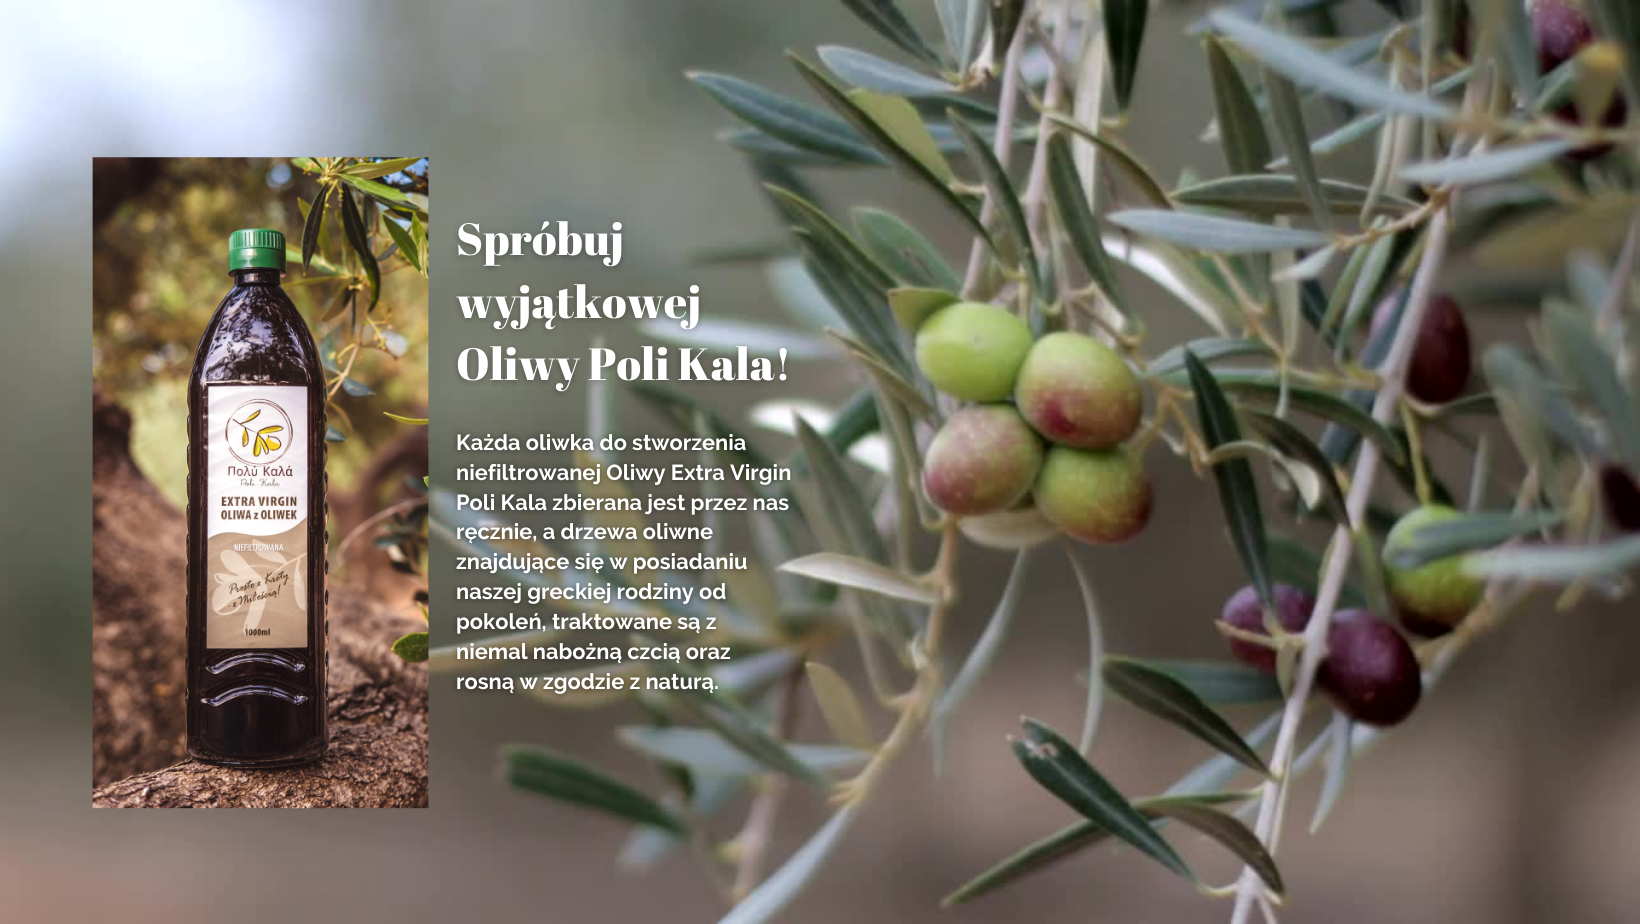 polikala oliwa z krety oliwa z oliwek oliwa z grecji oliwa od rolnika pomidory kreta grecja